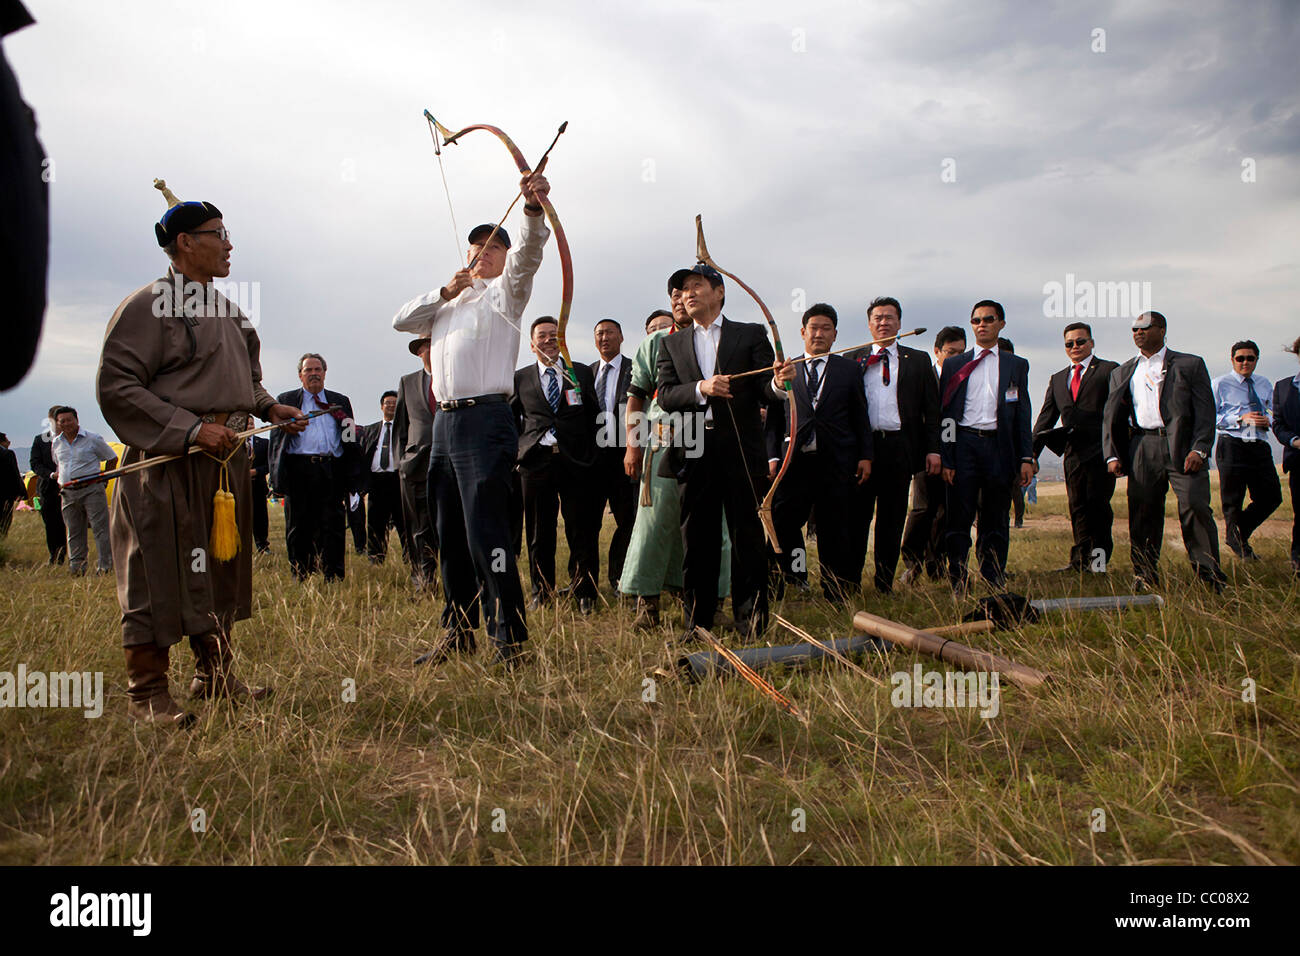 Vize-Präsident Joe Biden mit mongolischen Ministerpräsidenten Sukhbaatar Batbold auf, spannt seinen Bogen während der Bogenschießen Teil einer kulturellen Demonstration 22. August 2011, außerhalb Ulaanbaatar, Mongolei. Stockfoto